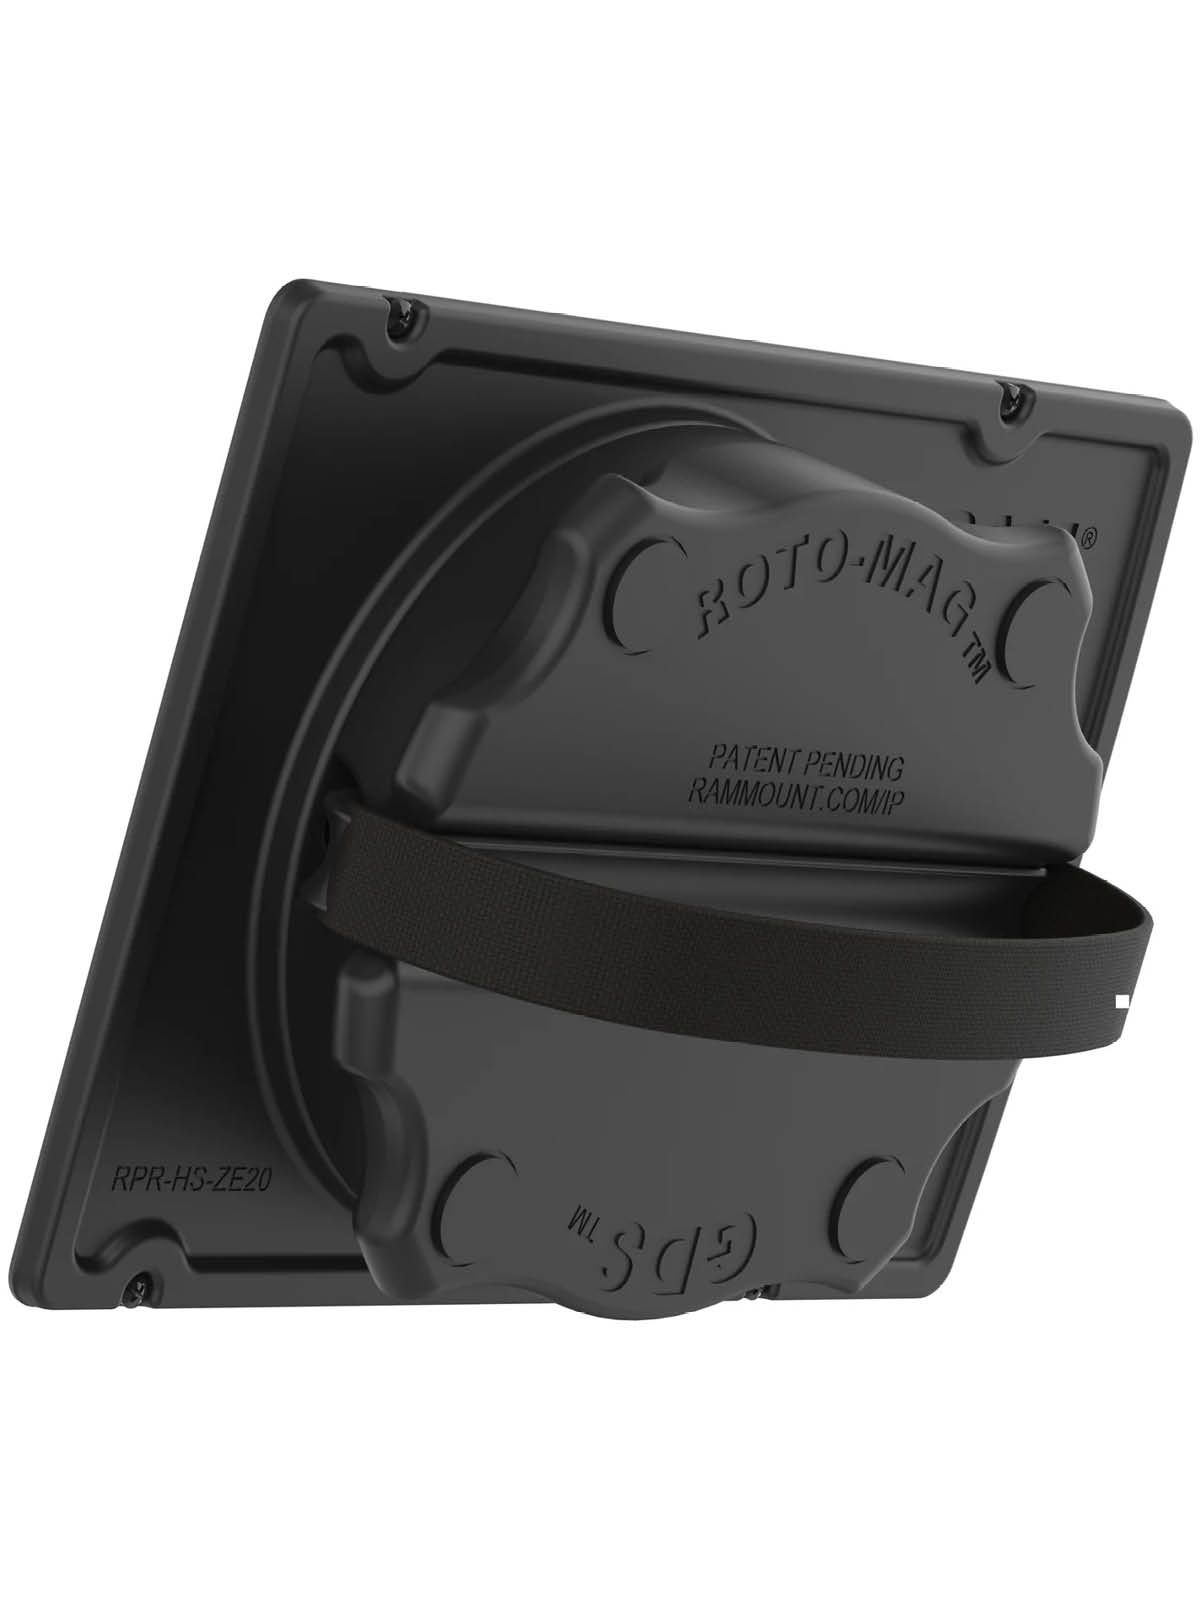 RAM Mounts GDS Roto-Mag für Zebra ET4x 8 Zoll Enterprise Tablet - 3-in-1 Zubehör mit Griff, Halteschlaufe und Magneten